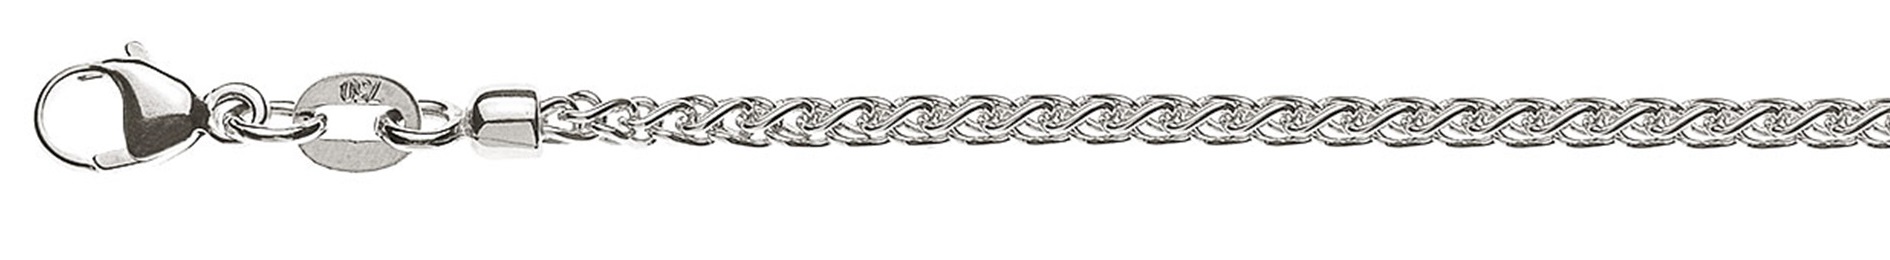 AURONOS Prestige Necklace white gold 18K cable chain 40cm 2.15mm